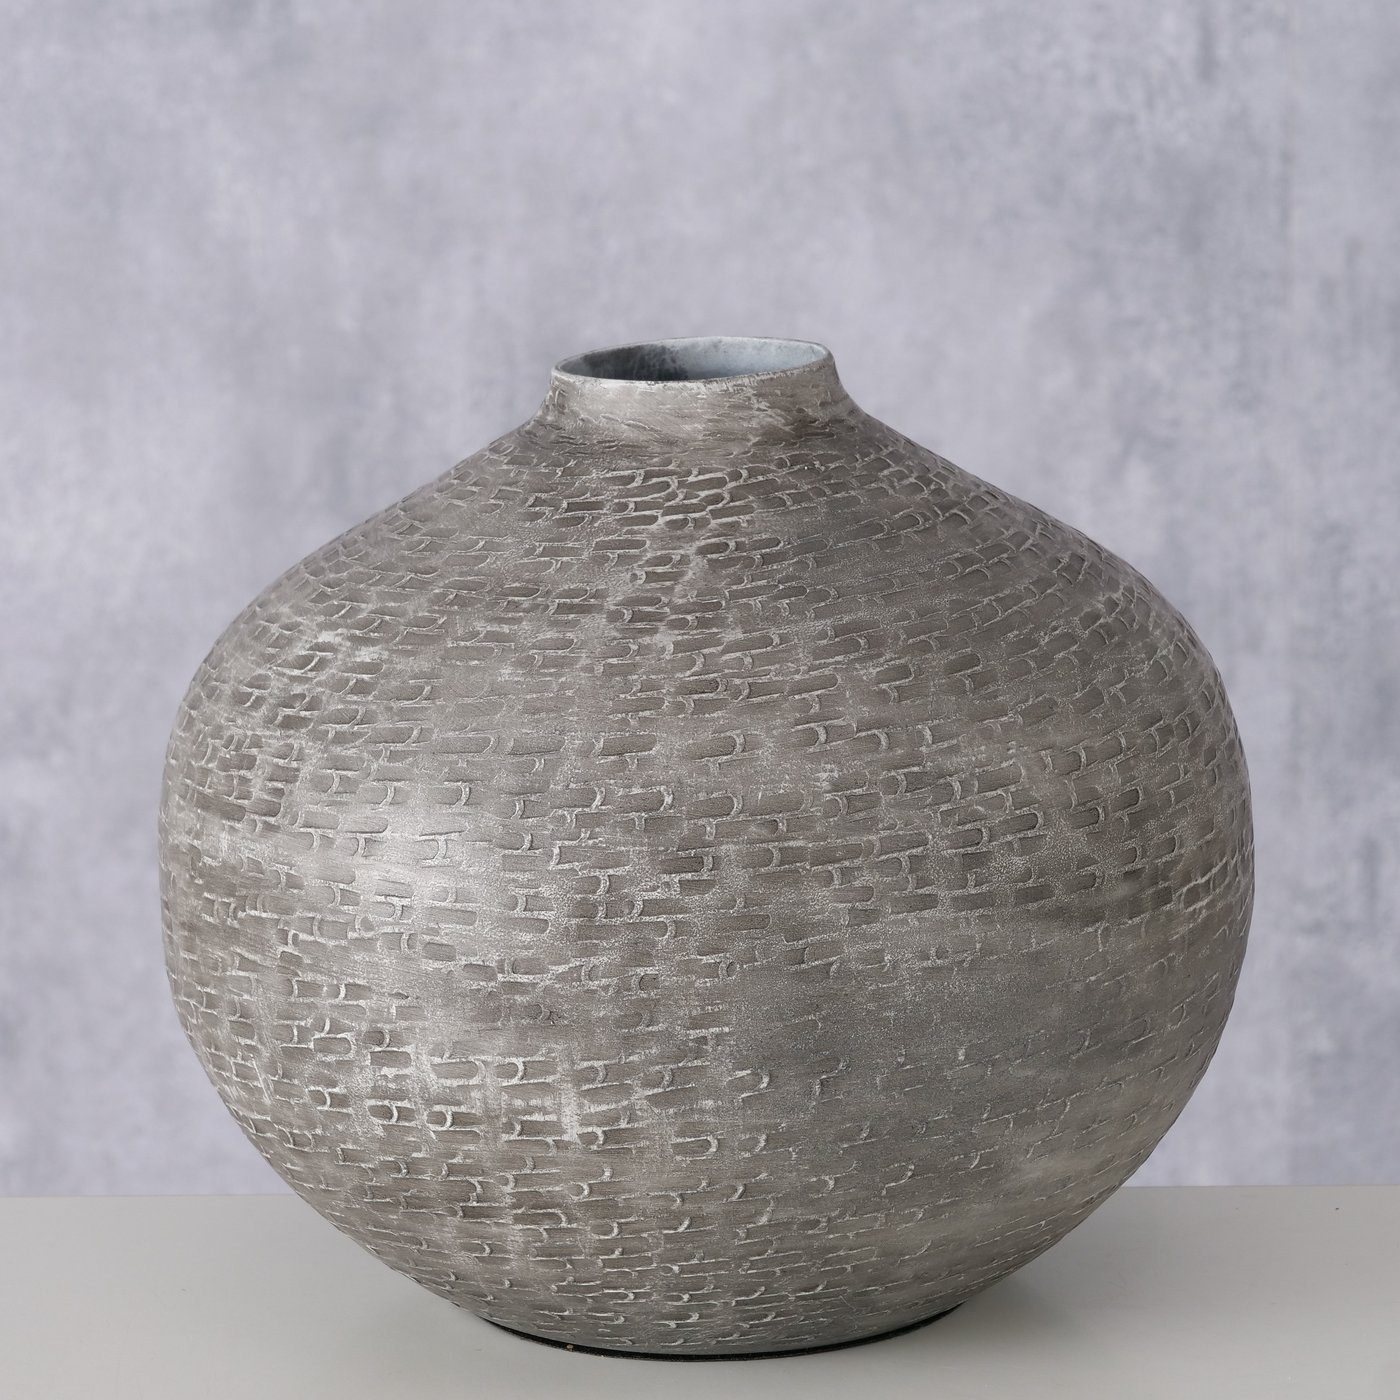 BOLTZE Dekovase "Tanish" Blumenvase Vase grau, in aus Metall